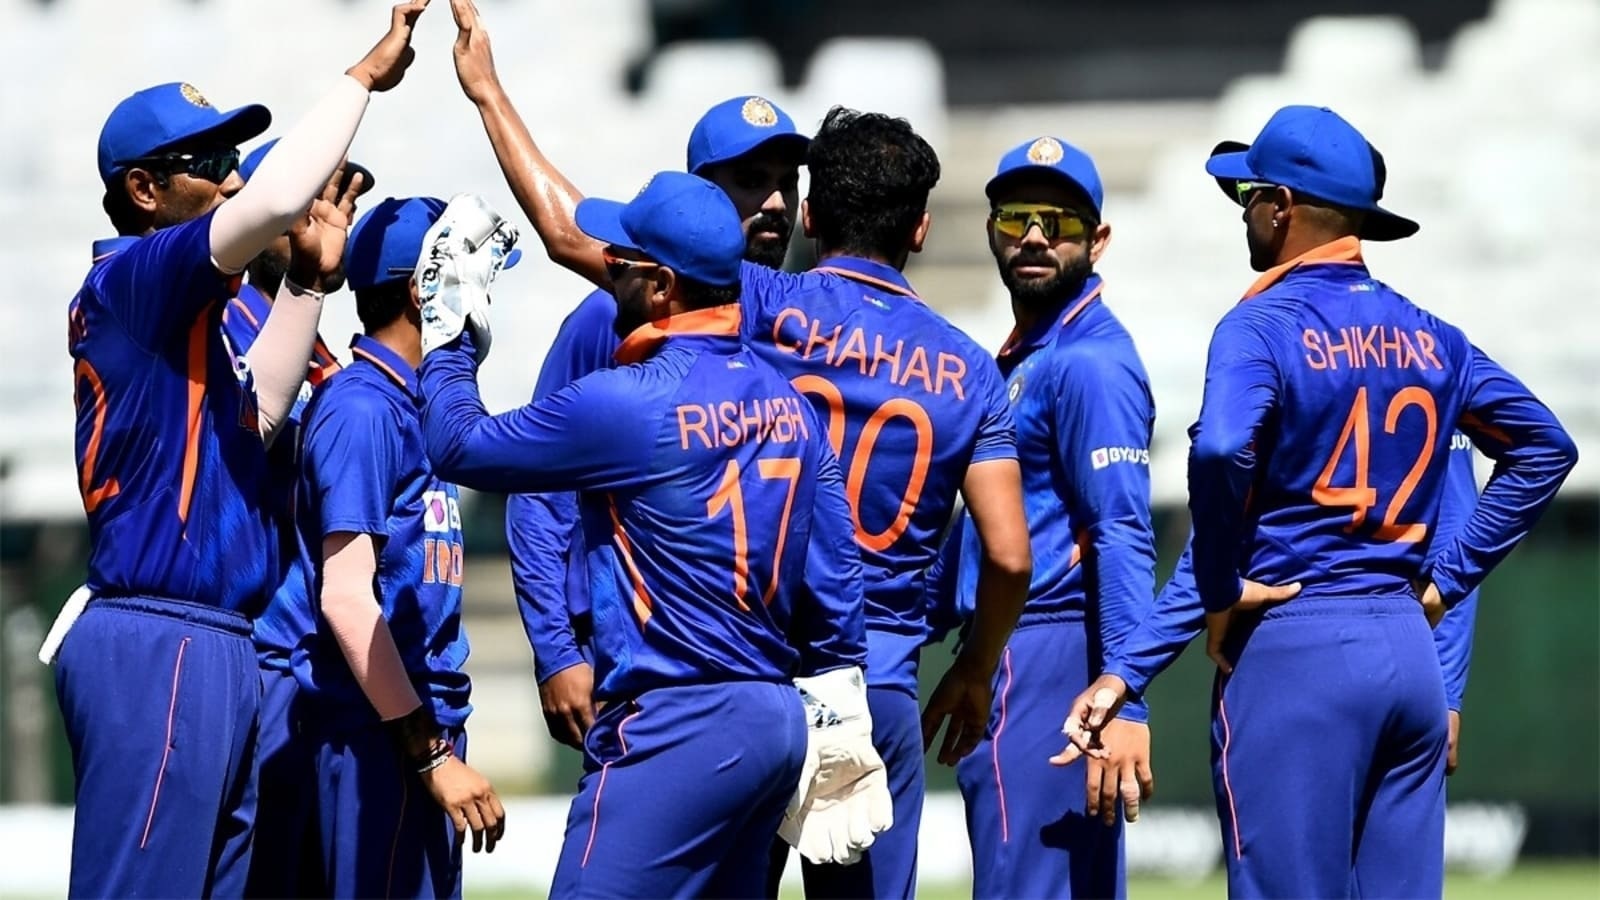 IND vs WI: वेस्टइंडीज के खिलाफ भारत की ODI टीम का ऐलान, सभी दिग्गजों को आराम, जानिए कौन बना कप्तान